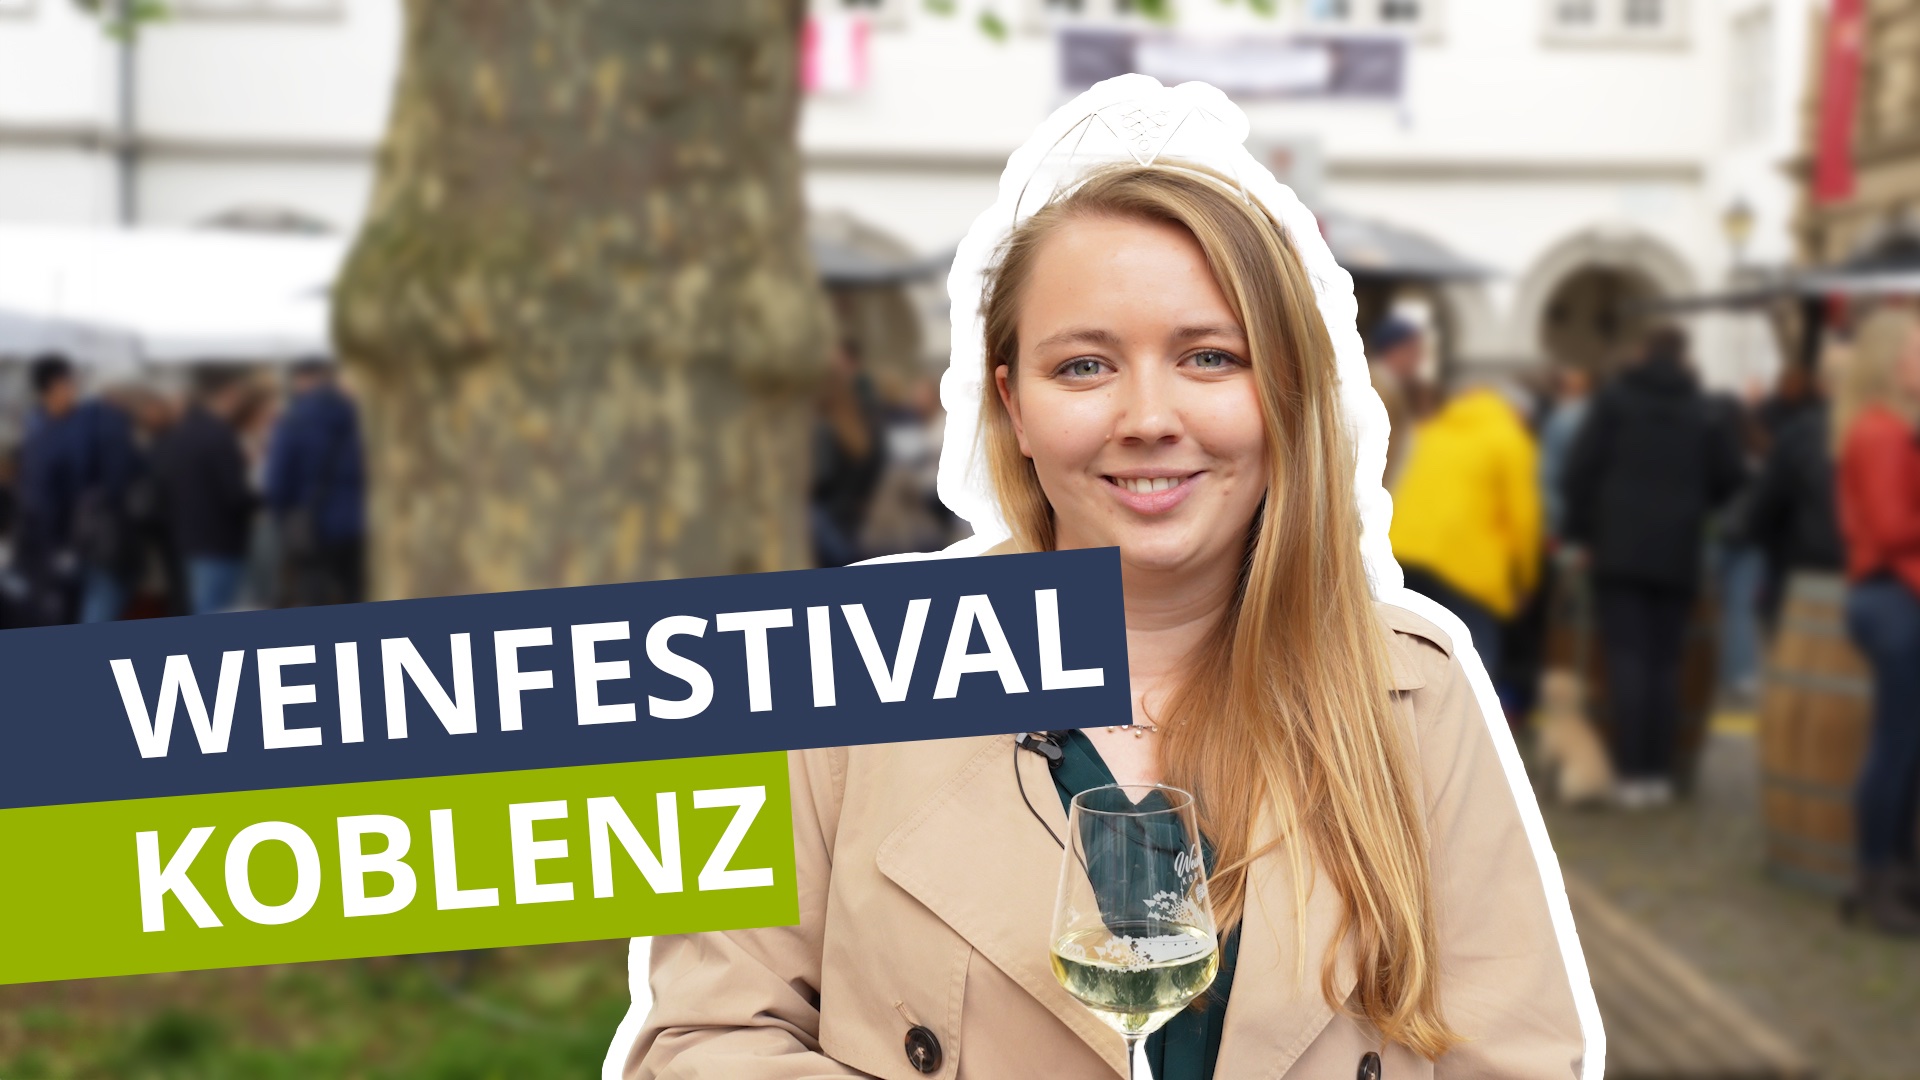 Weinfestival eröffnet - Koblenz feiert den Wein